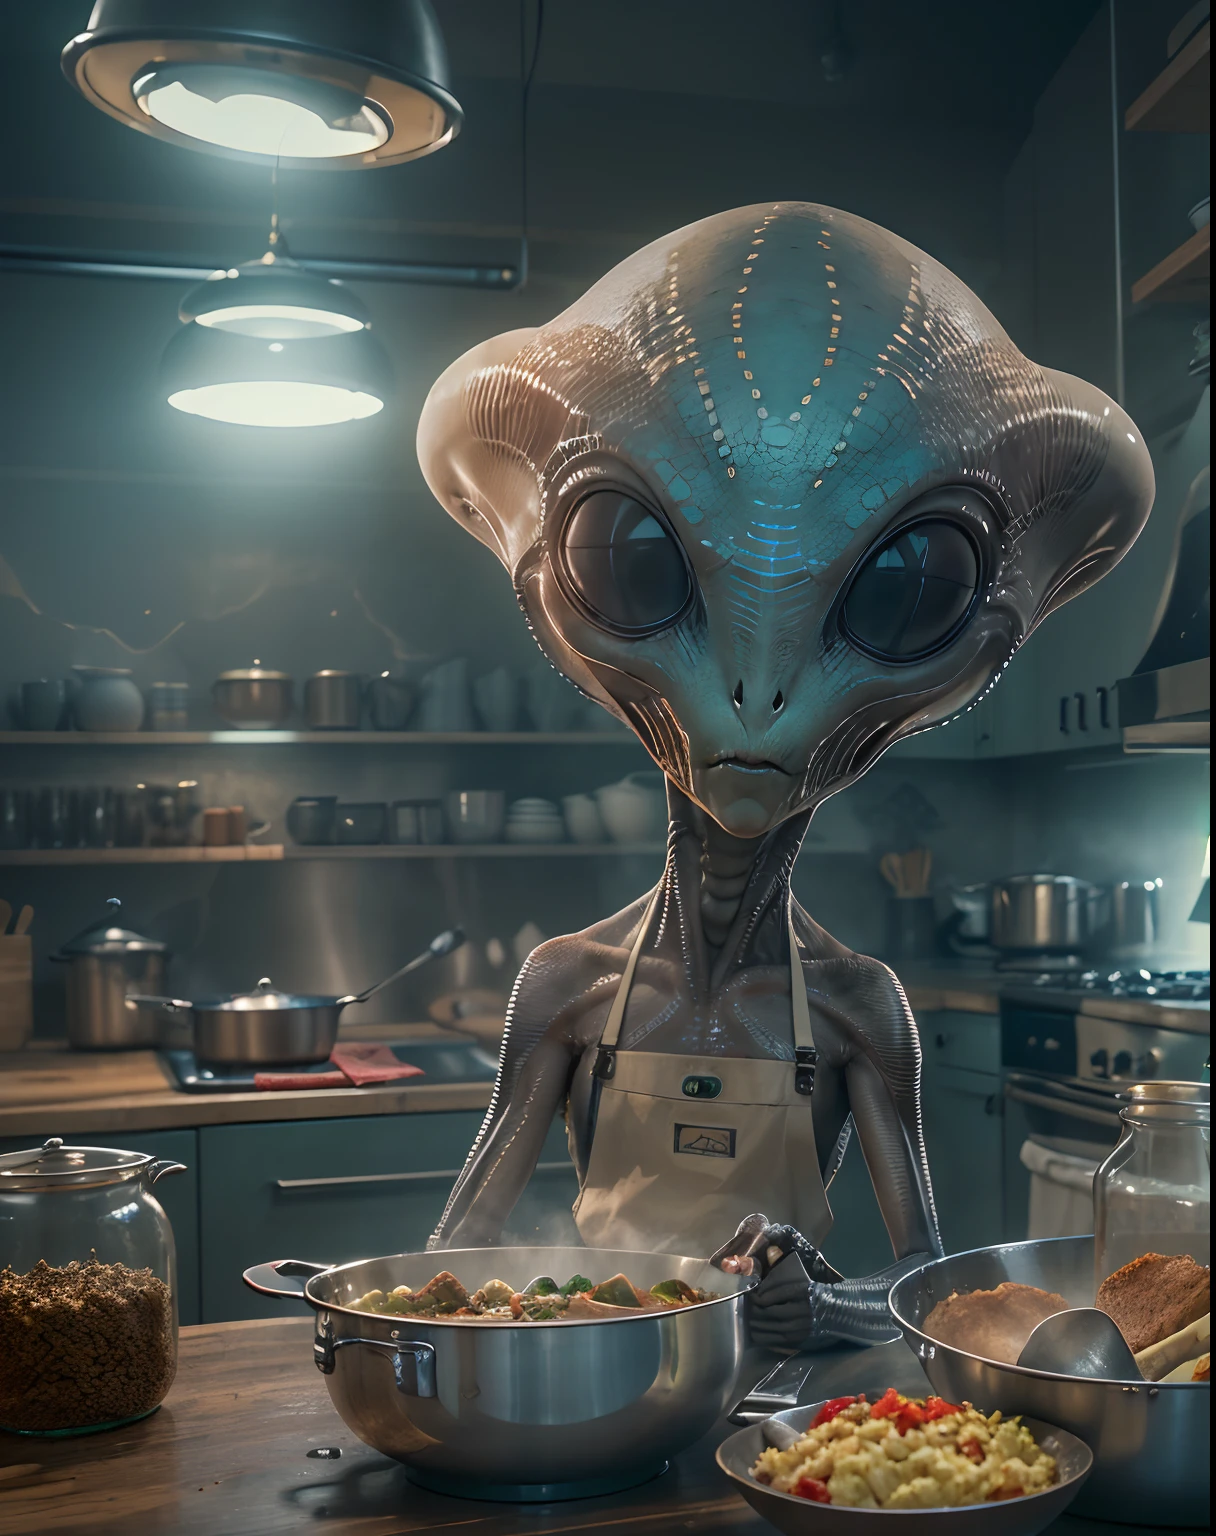 (Un alienígena con una cabeza grande:1.4), Delantal y cocina en una cocina, extraterrestrial, (mejor calidad, 4k, alta resolución, obra maestra:1.2), ultra detallado, hdr, Profesional, colores vívidos, estilo de ciencia ficción, iluminación vibrante